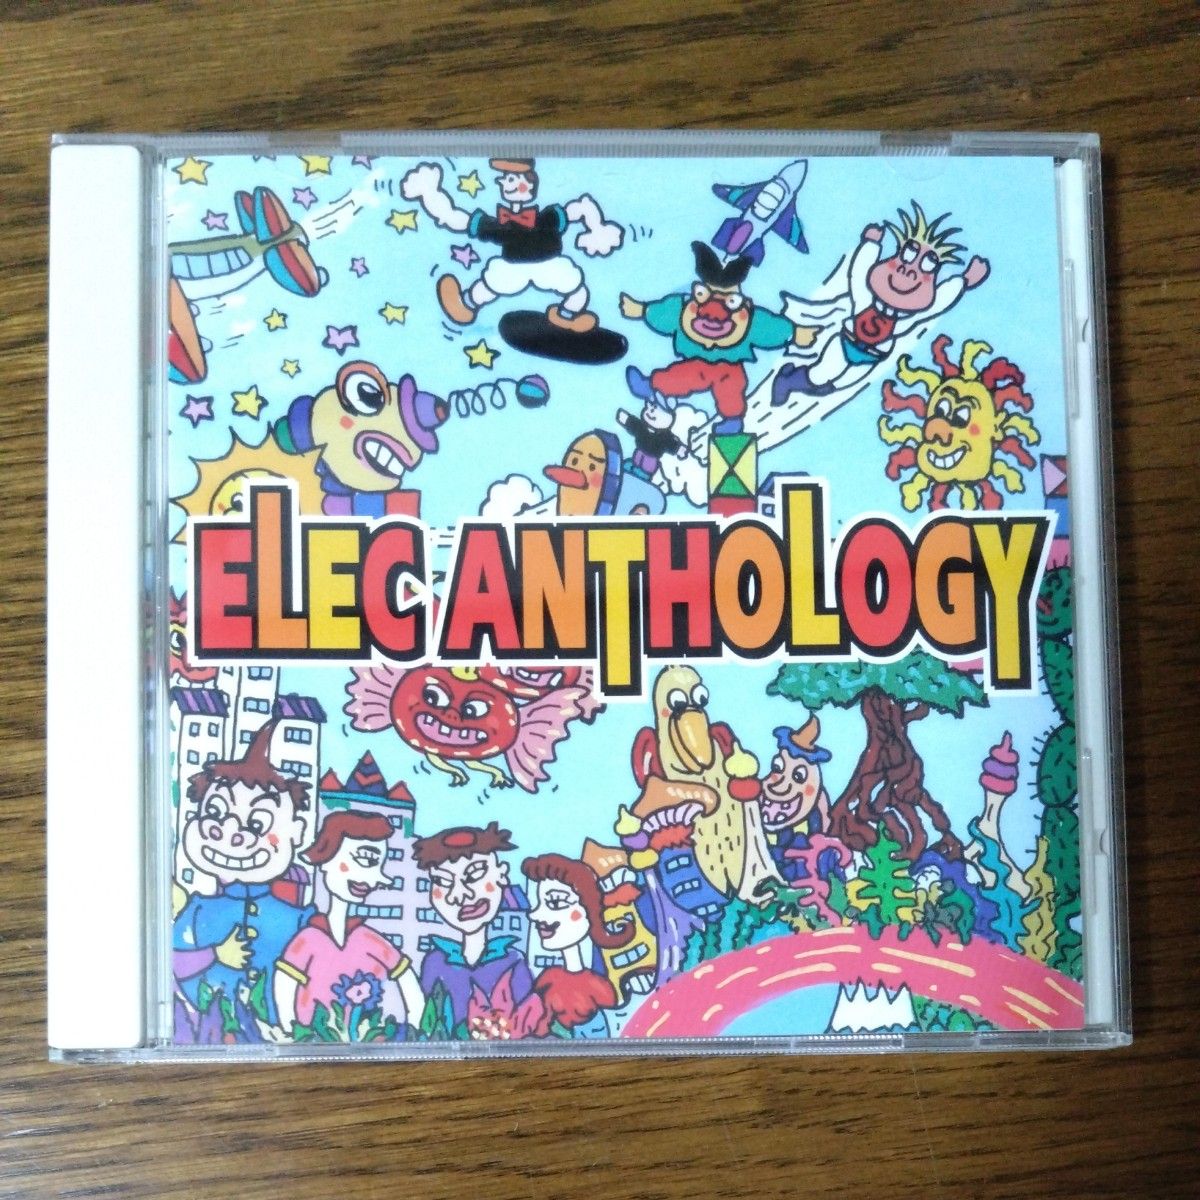 CD　エレック・アンソロジー